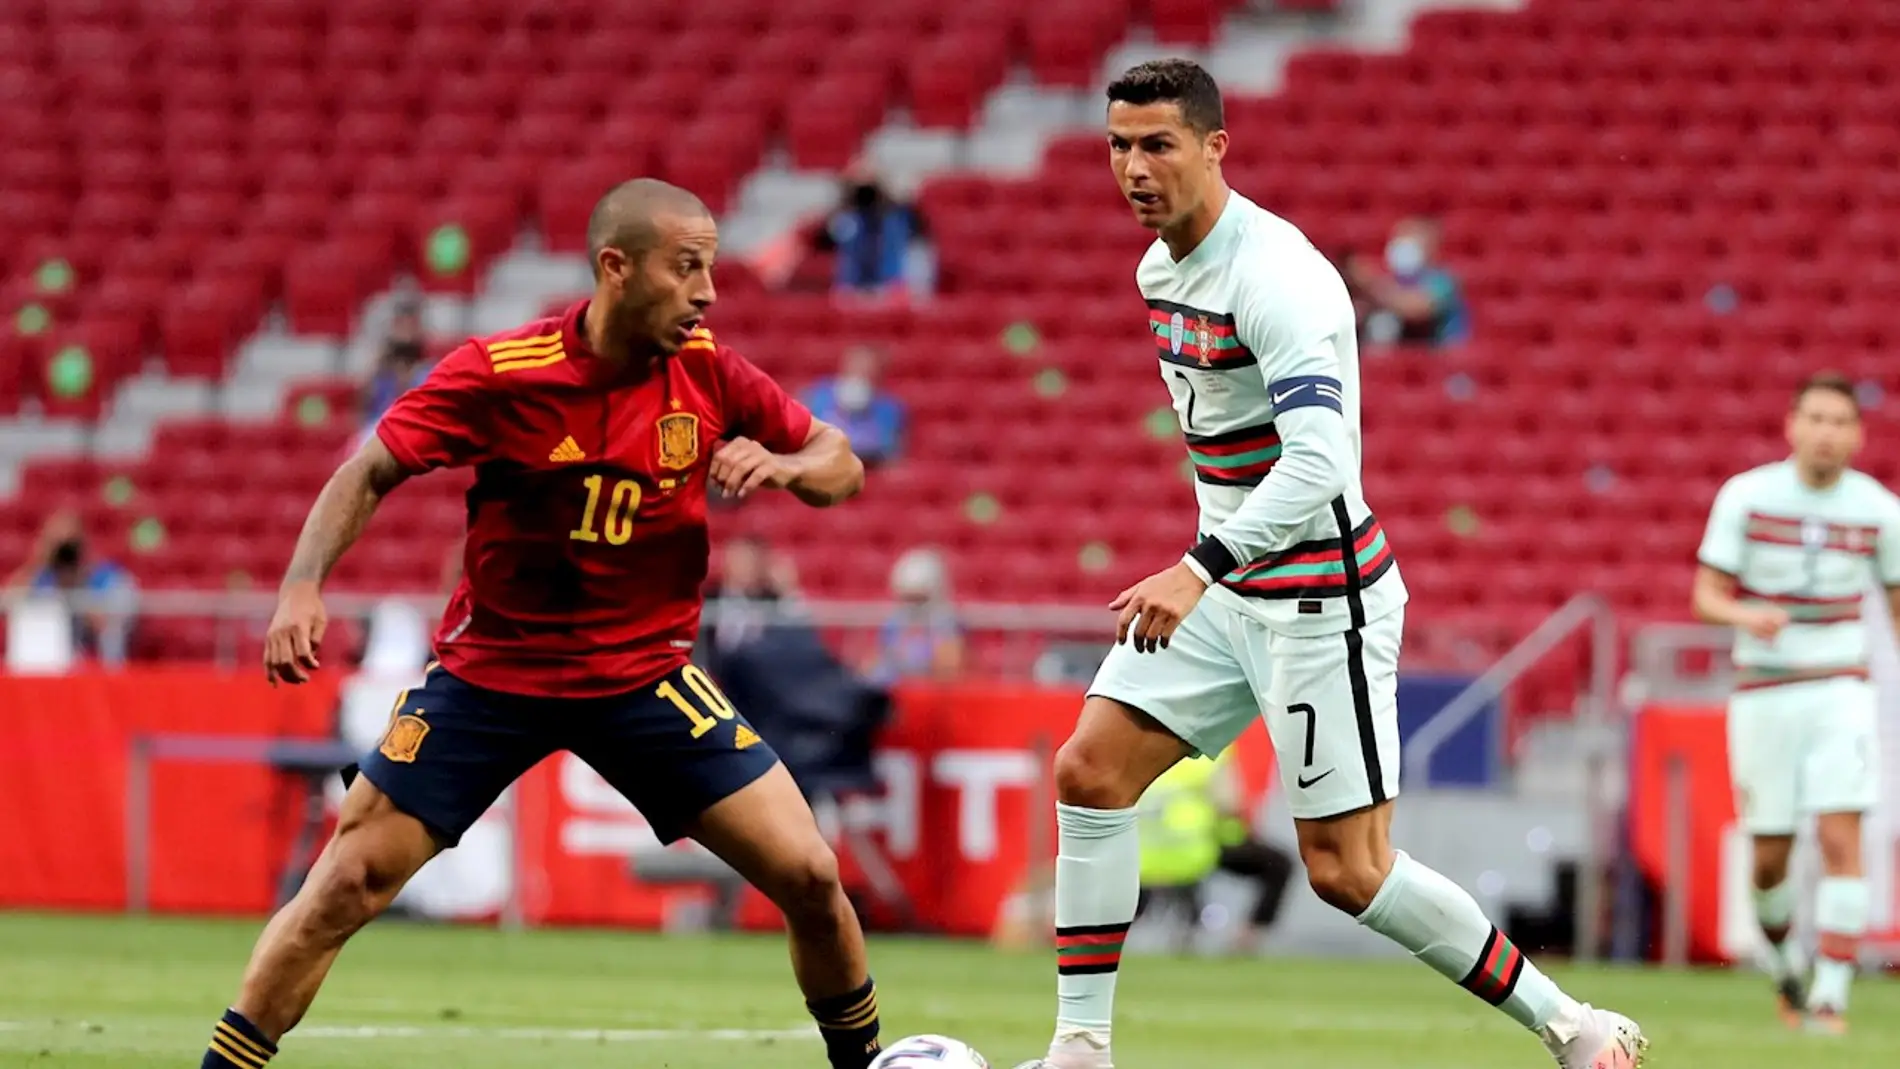 Thiago disputa un balón con Cristiano Ronaldo en el último España - Portugal